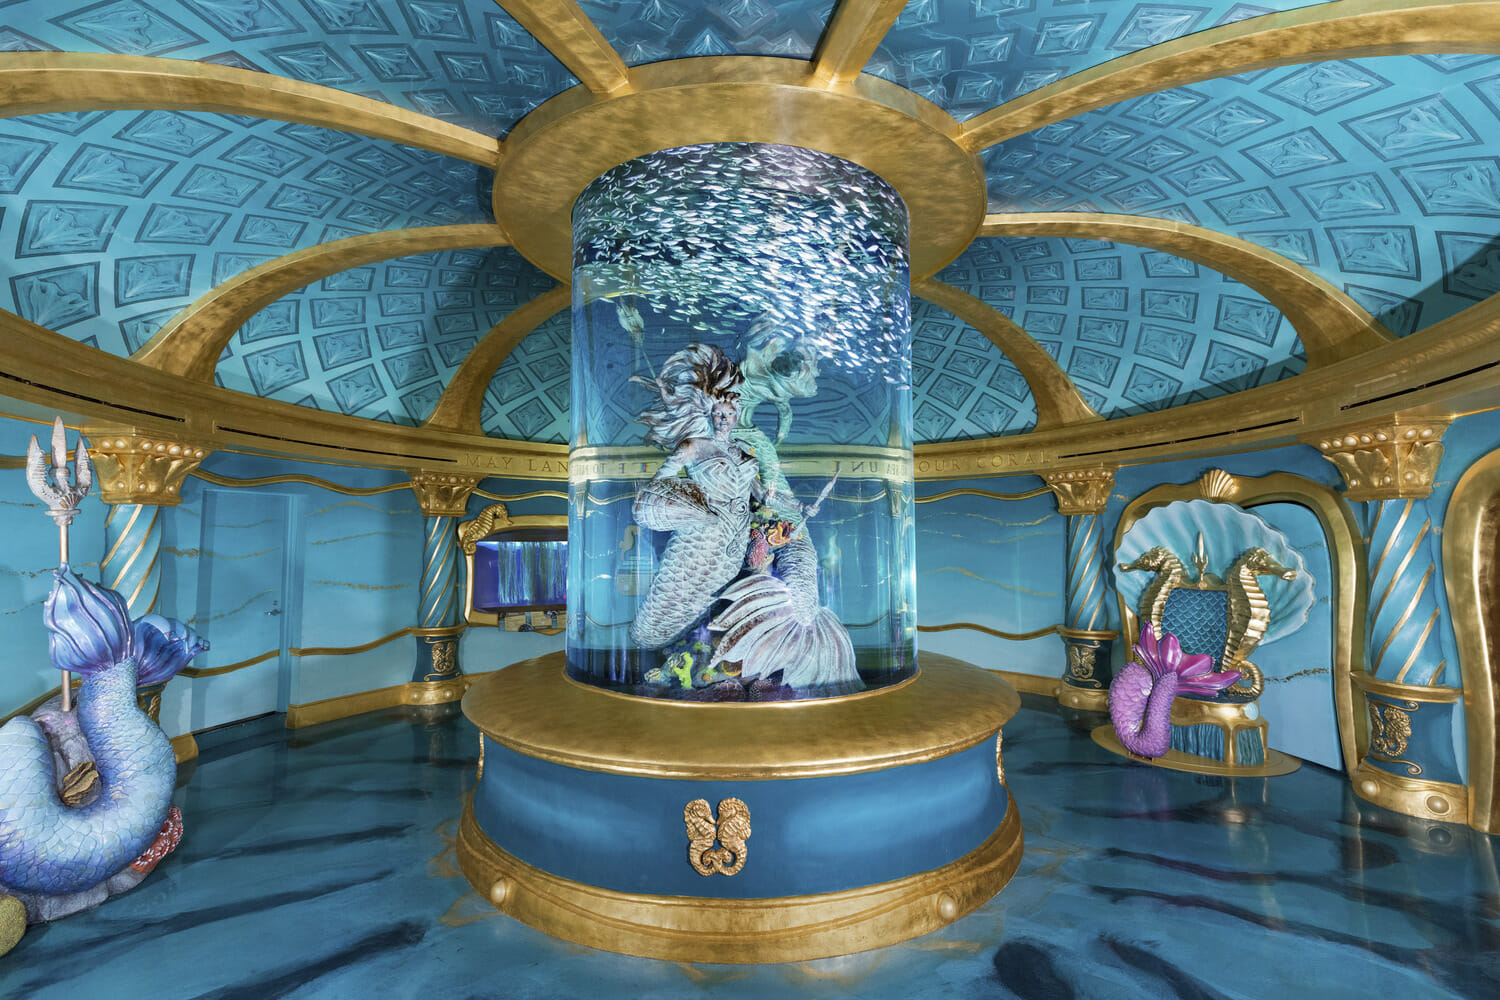 The little mermaid room at disneyland.